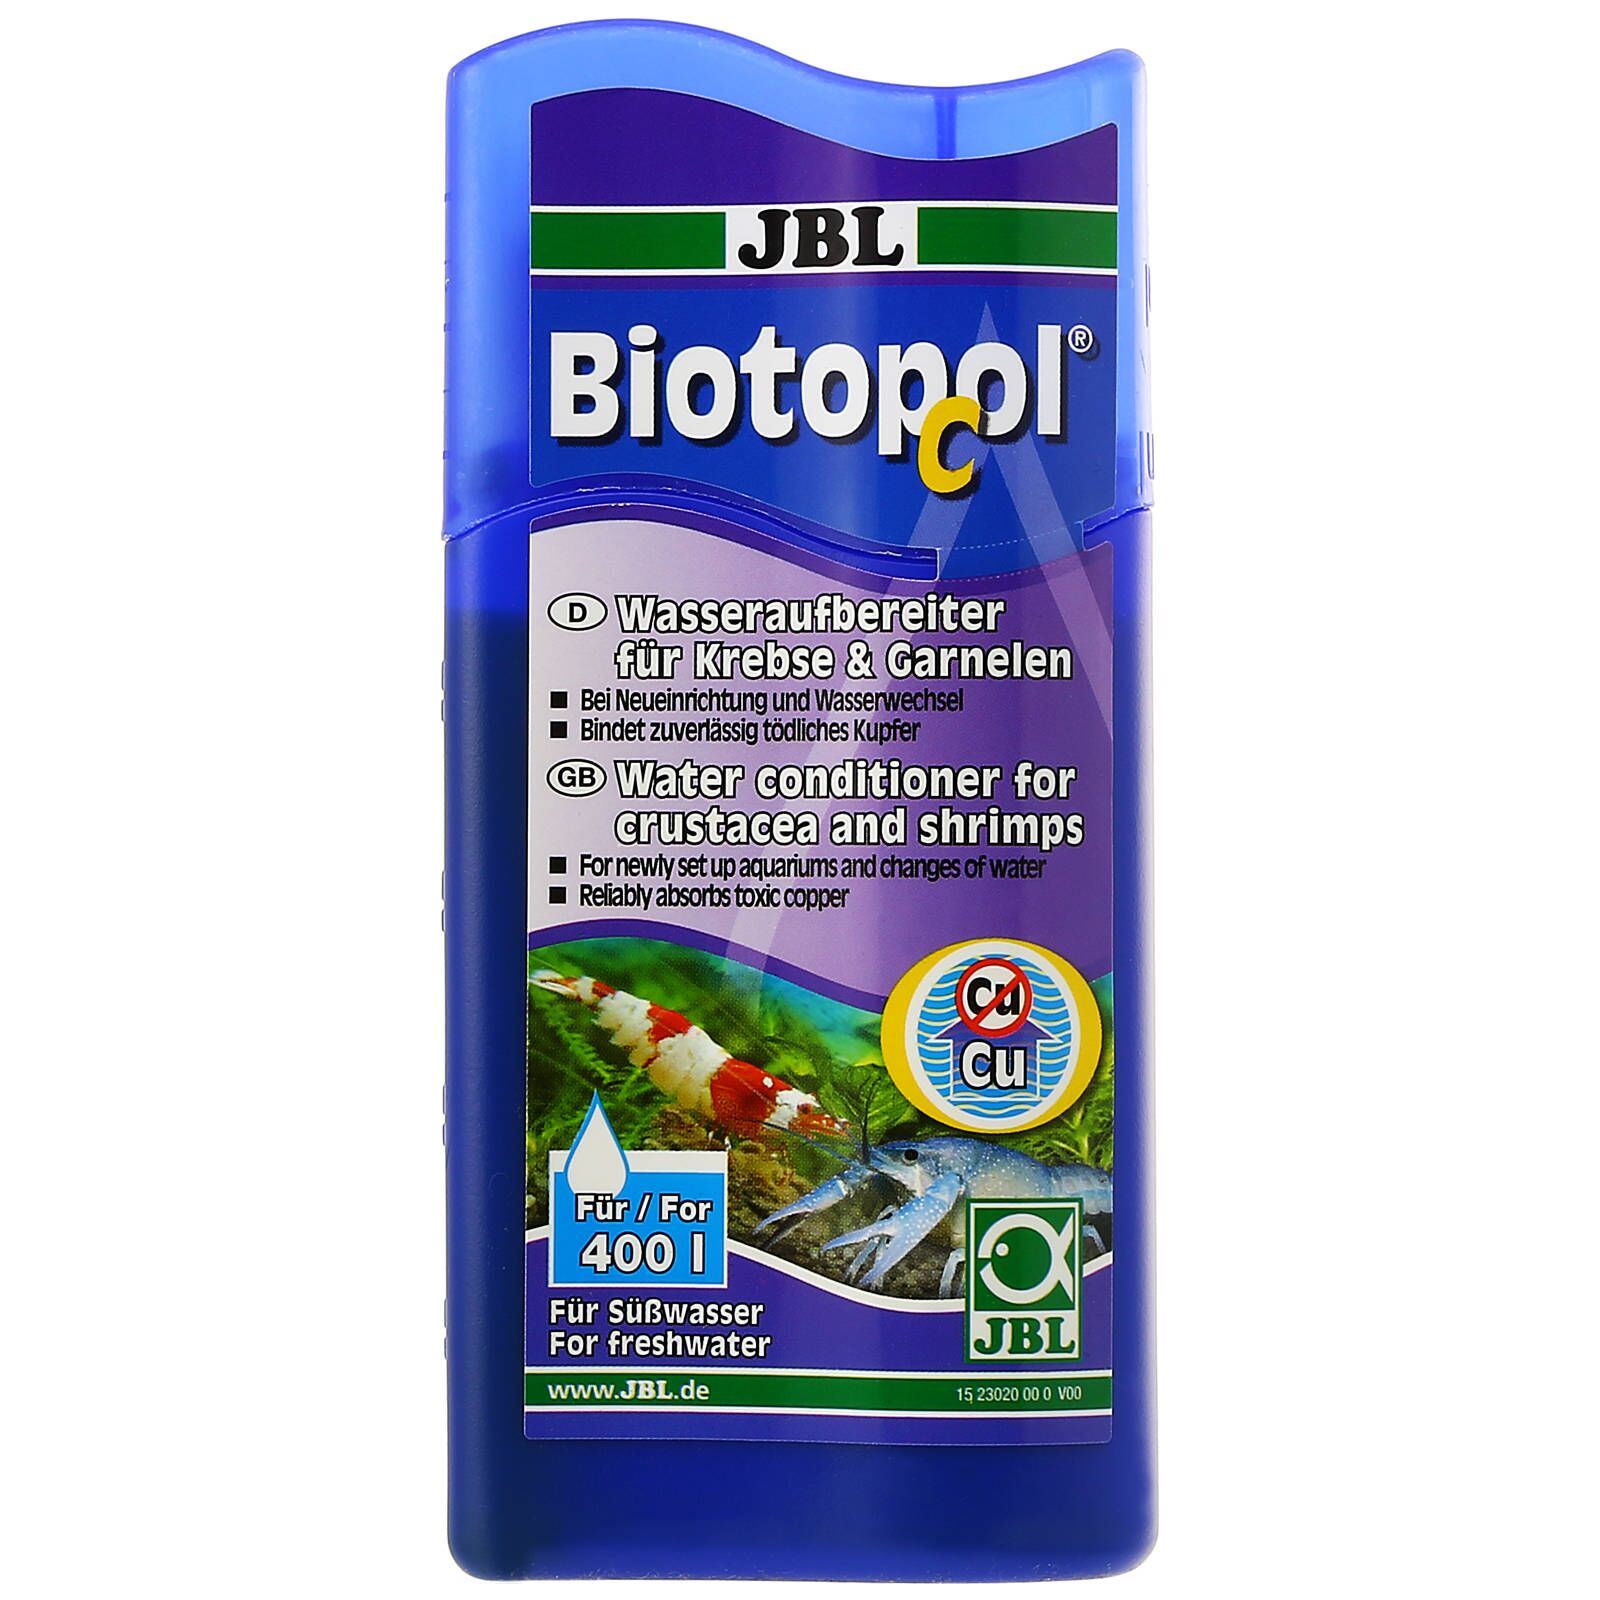 JBL Biotopol C 100ml